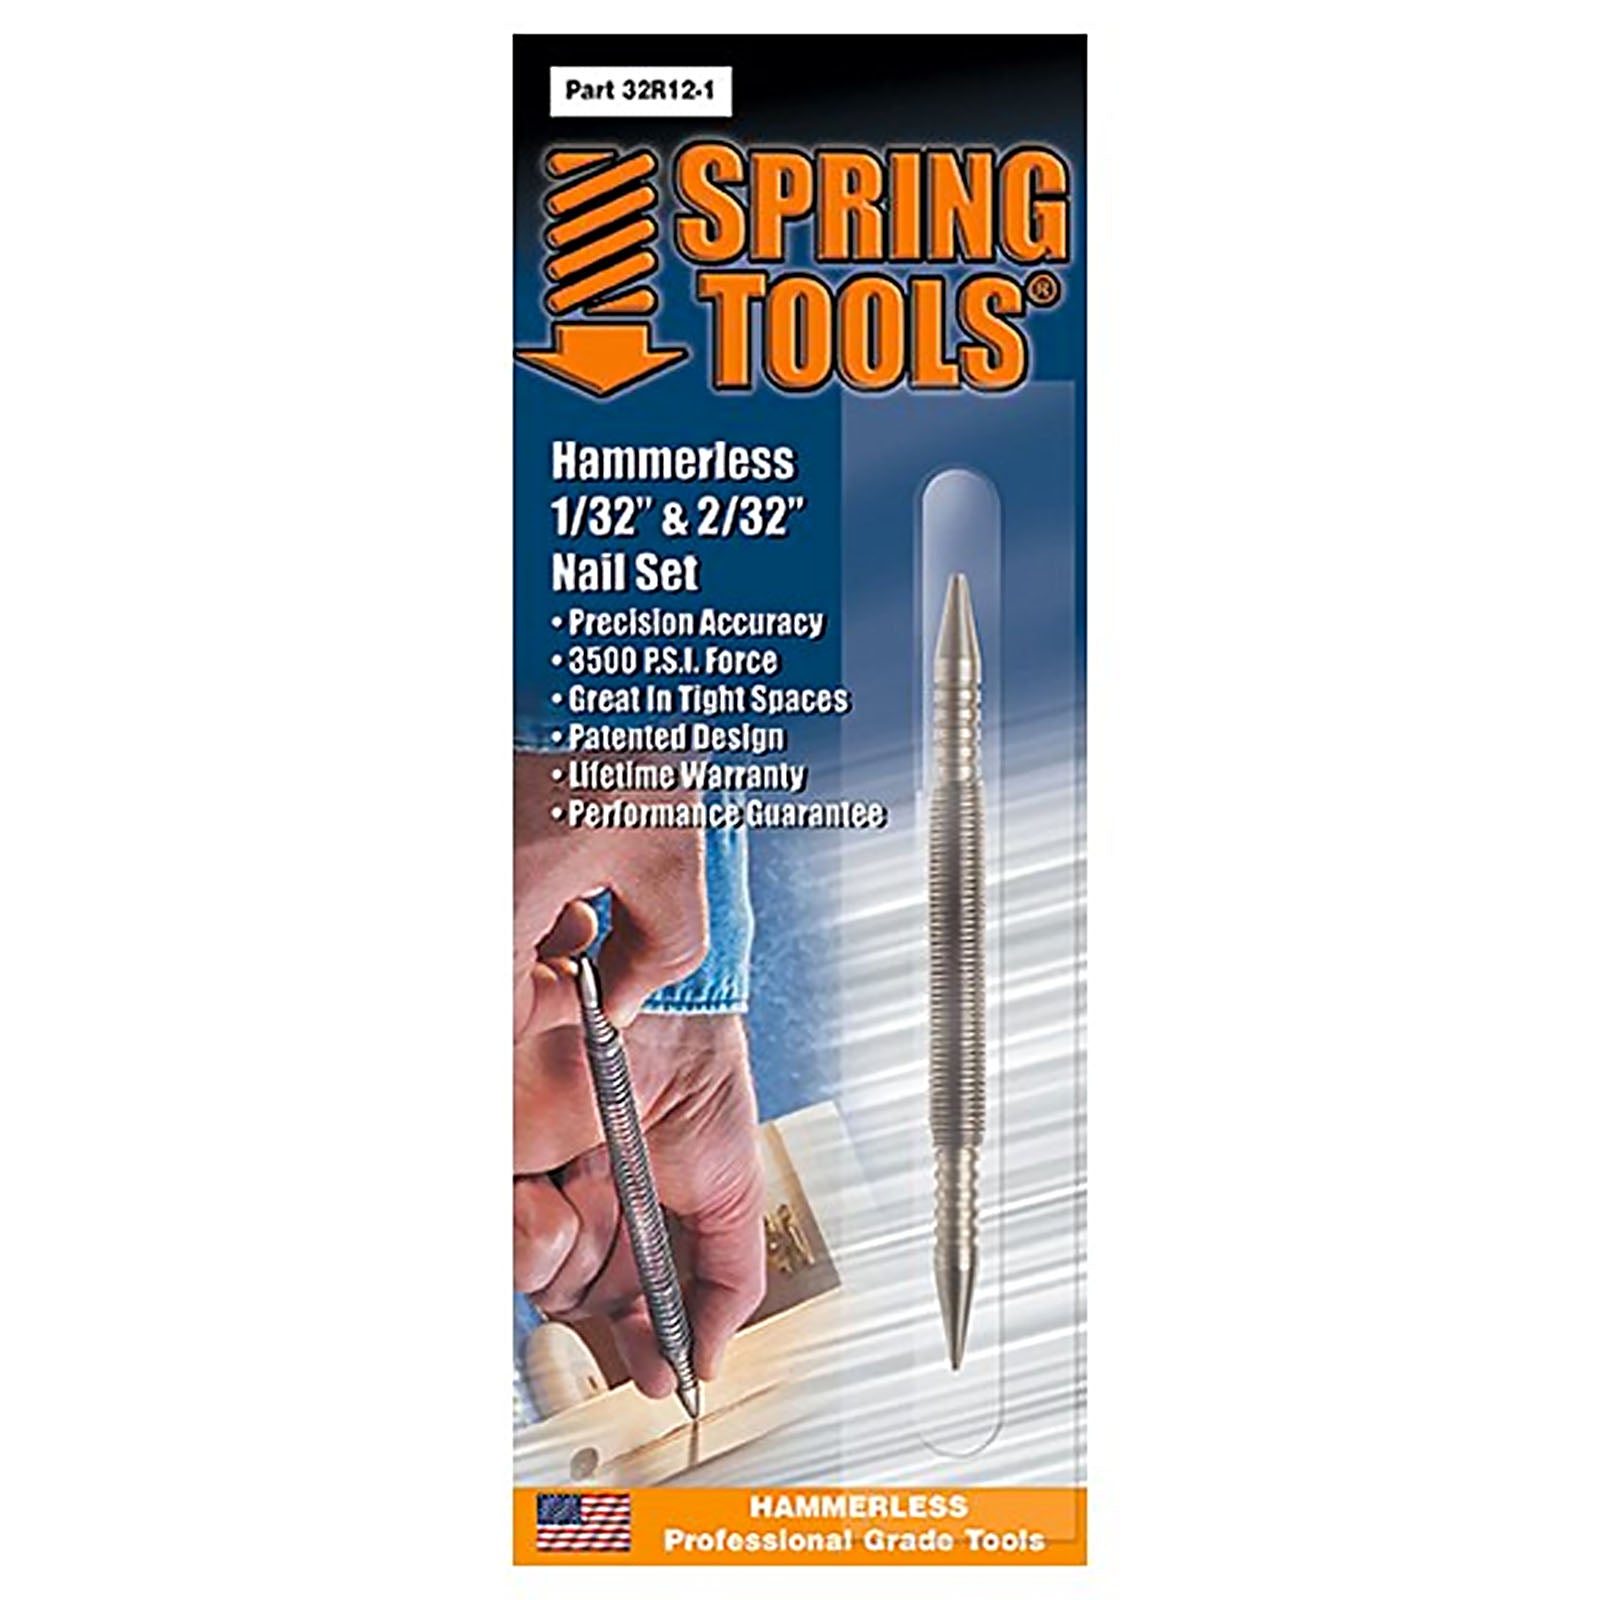 Spring Tools 32R12-1 Hammerless 1/32" & 2/32" Nail Set